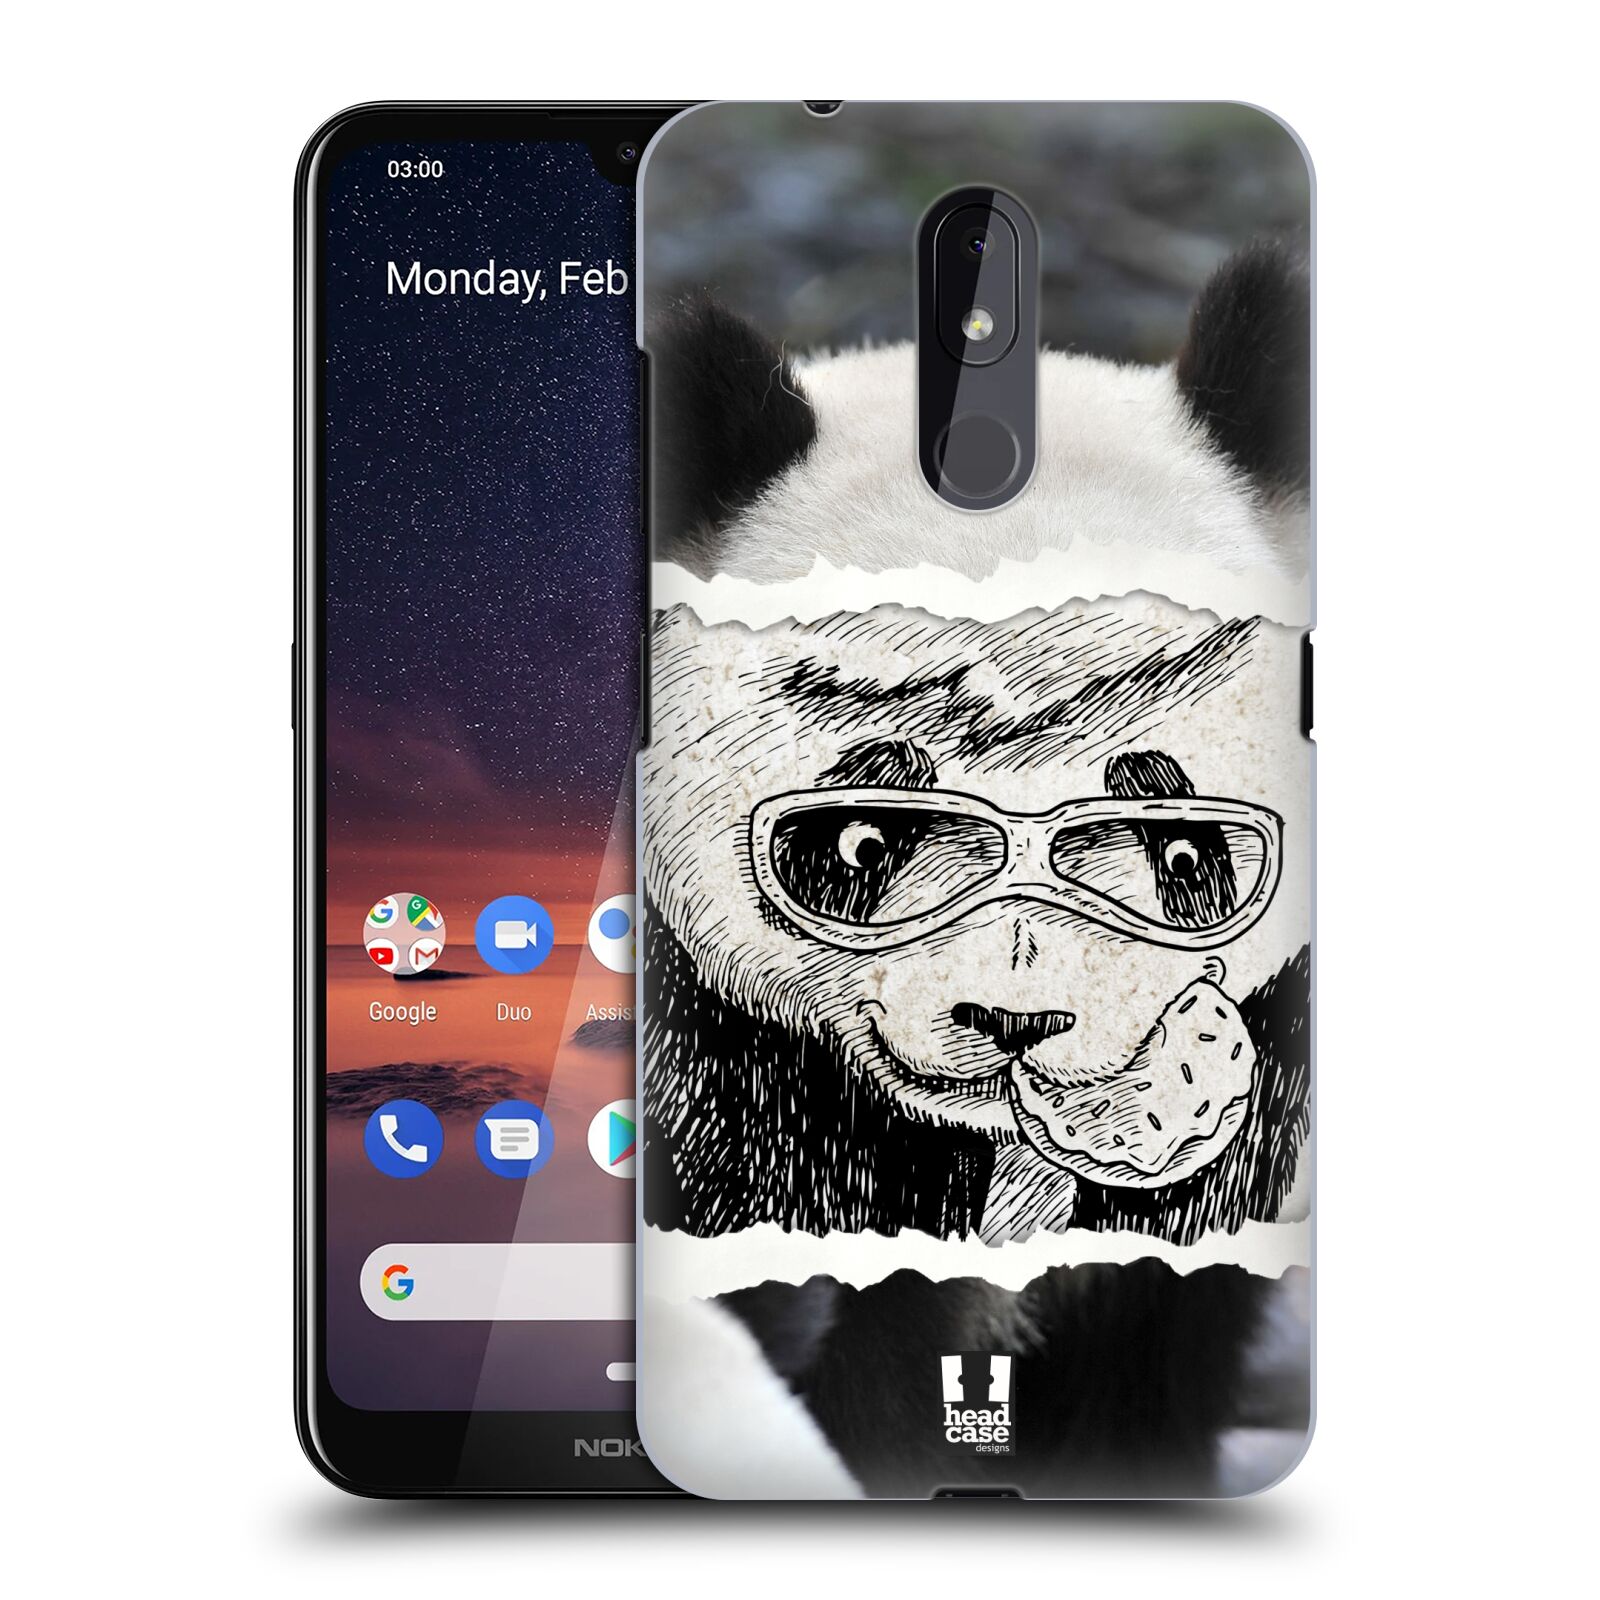 Pouzdro na mobil Nokia 3.2 - HEAD CASE - vzor zvířata koláž roztomilá panda